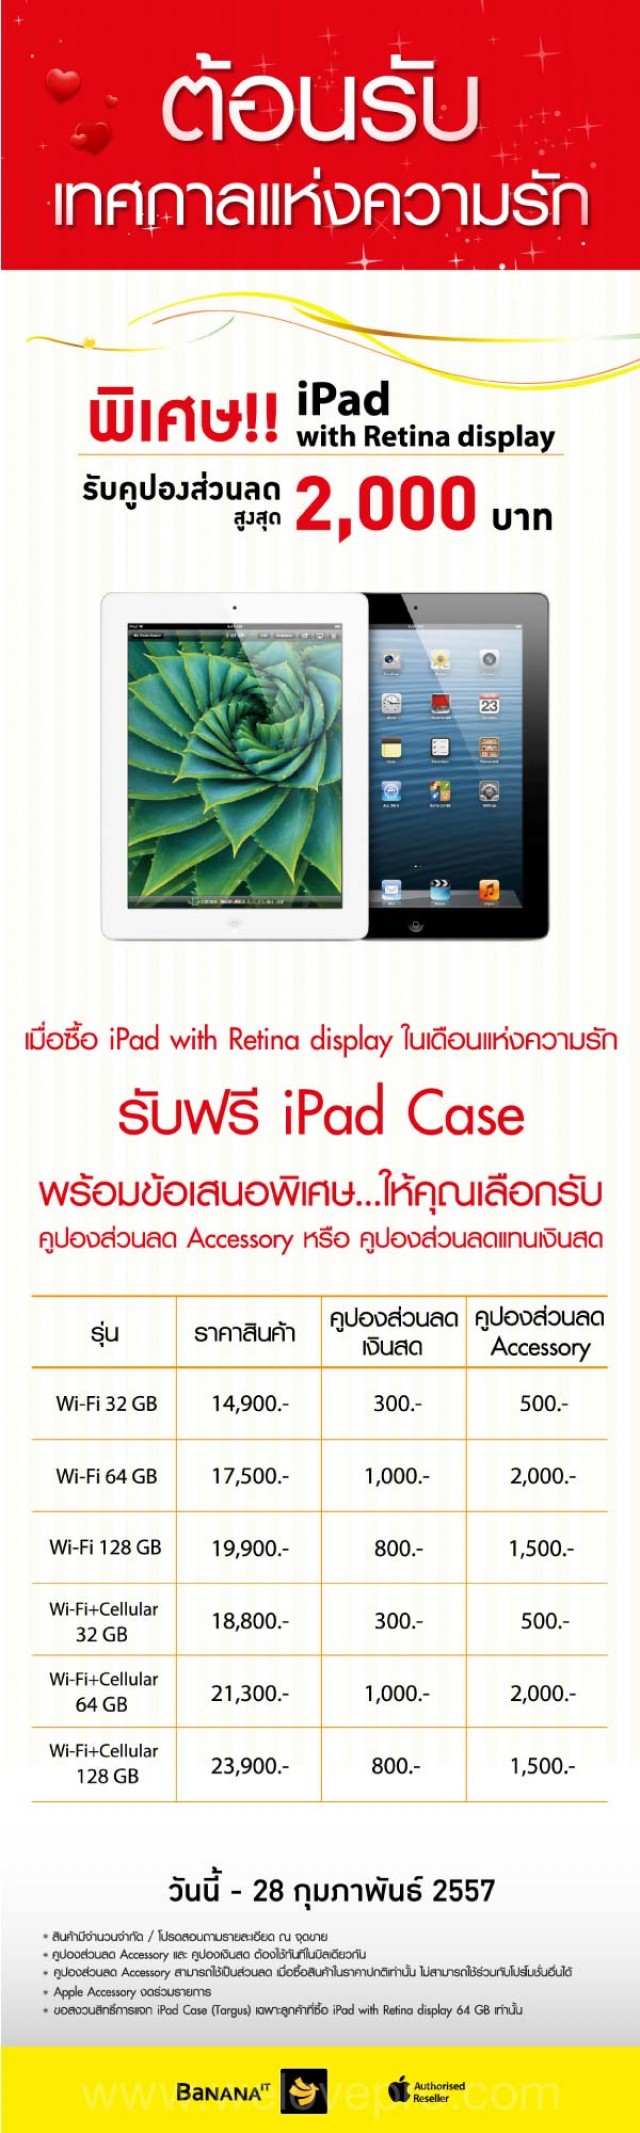 โปรโมชั่น BaNANA IT ต้อนรับเทศกาลแห่งความรัก ซื้อ iPad รับคูปองส่วนลดสูงสุด 2,000 บาท